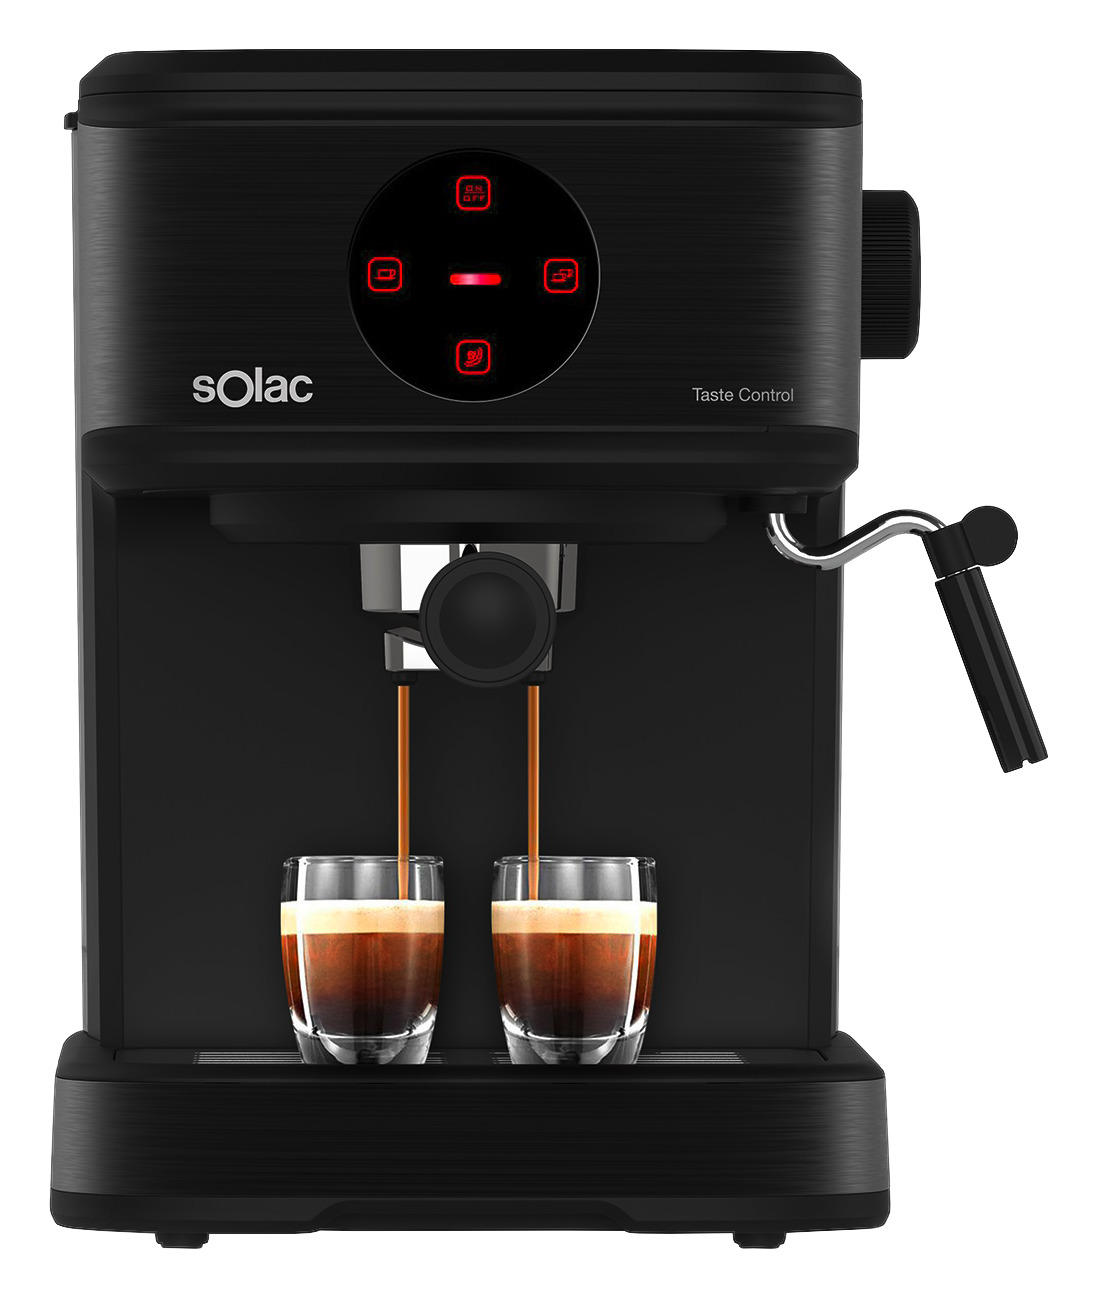 Solac Kaffeeautomat Ce4498 Schwarz B/h/t: Ca. 20,5x27x29 Cm Taste Control - schwarz (20,50/27,00/29,00cm)